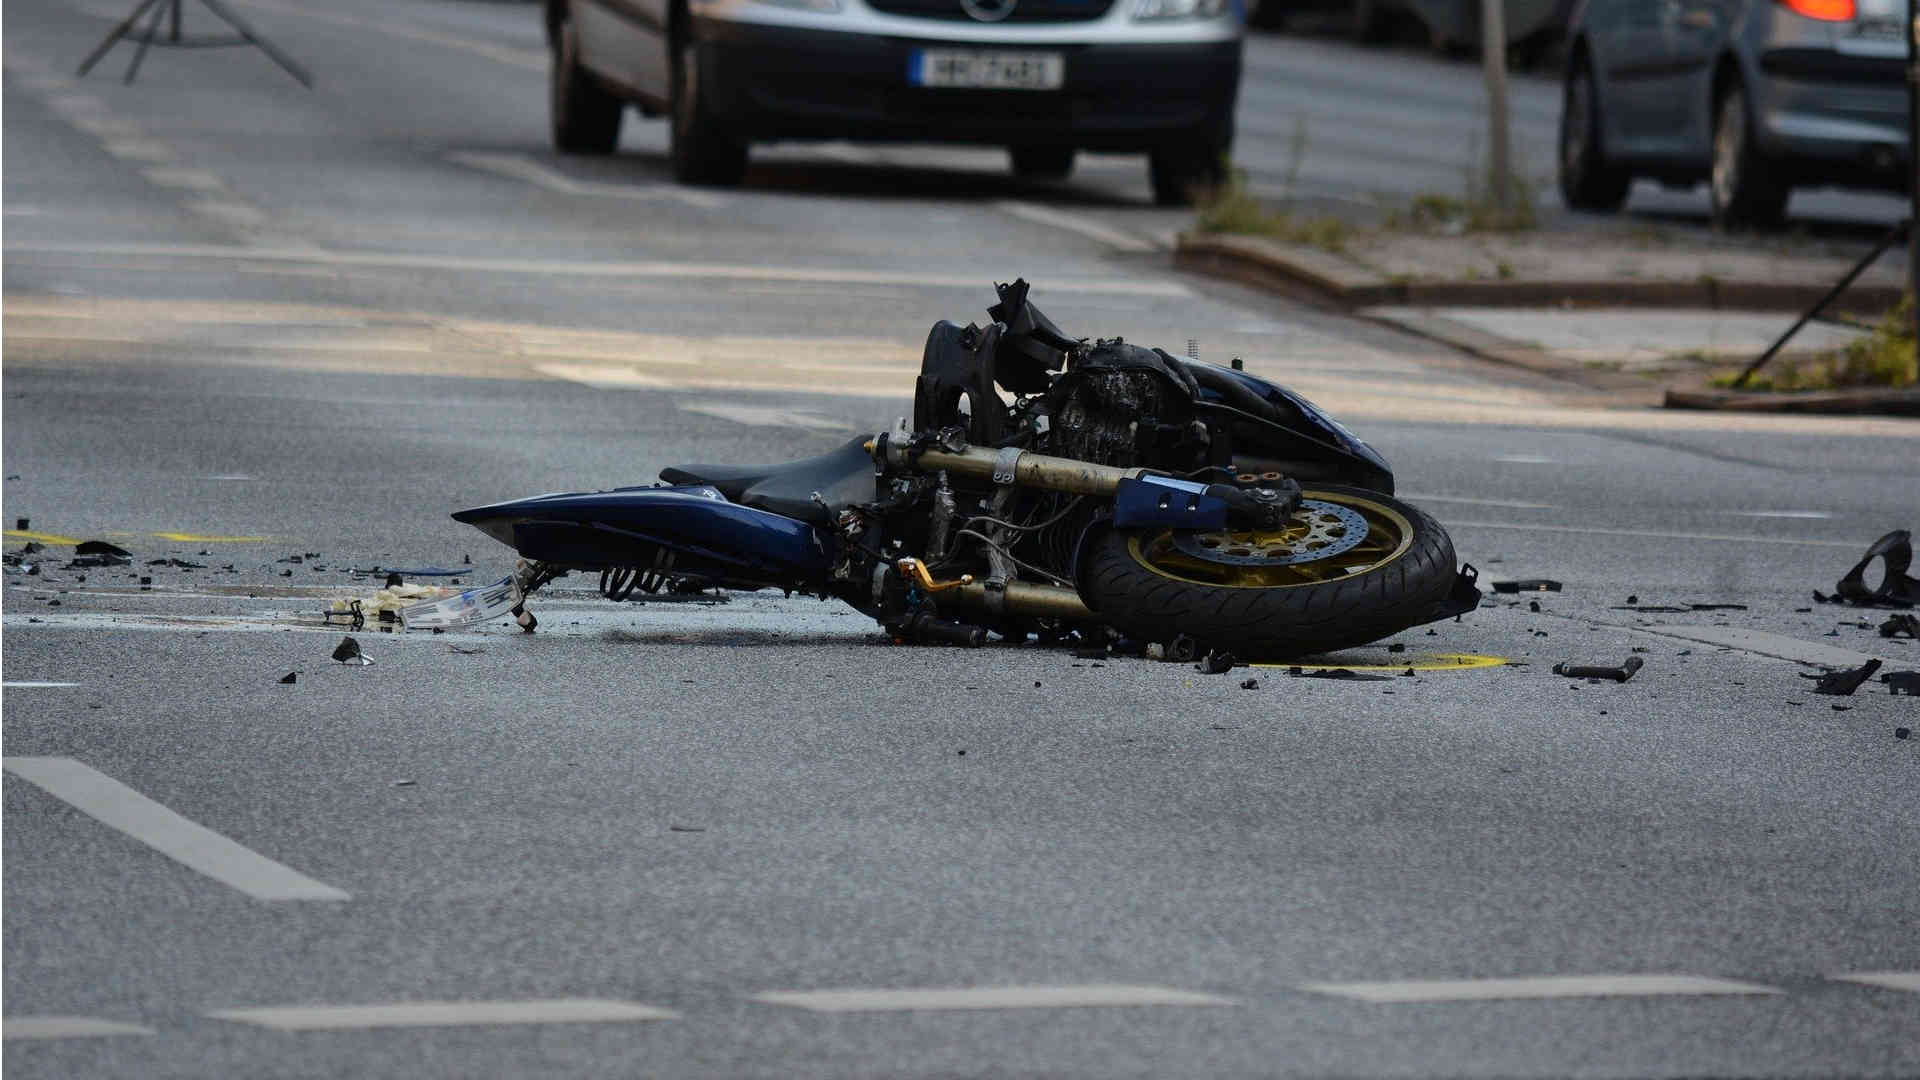 Screen_Motorrad_Unfall